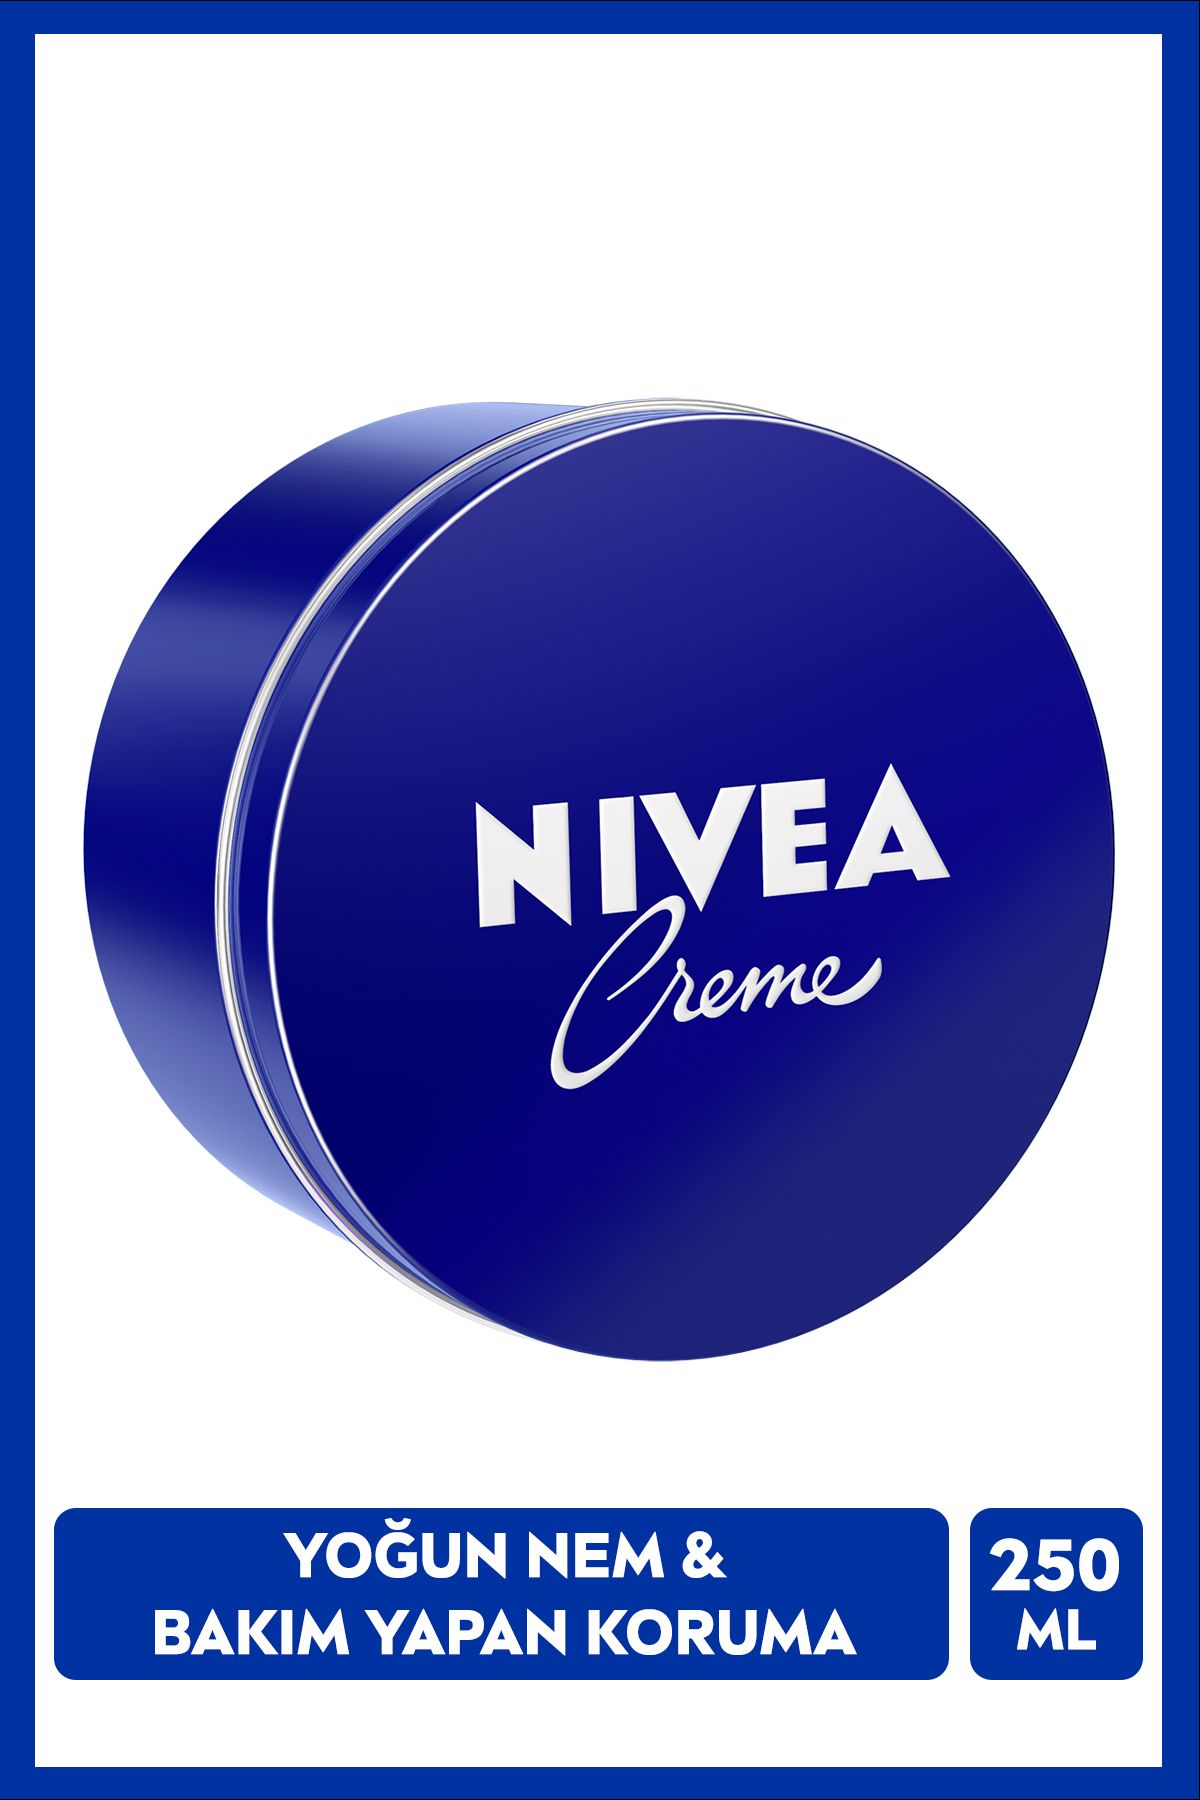 NIVEA Creme 250ml,bakım Yapan Koruma, Tüm Ciltler Için Nemlendirici Krem